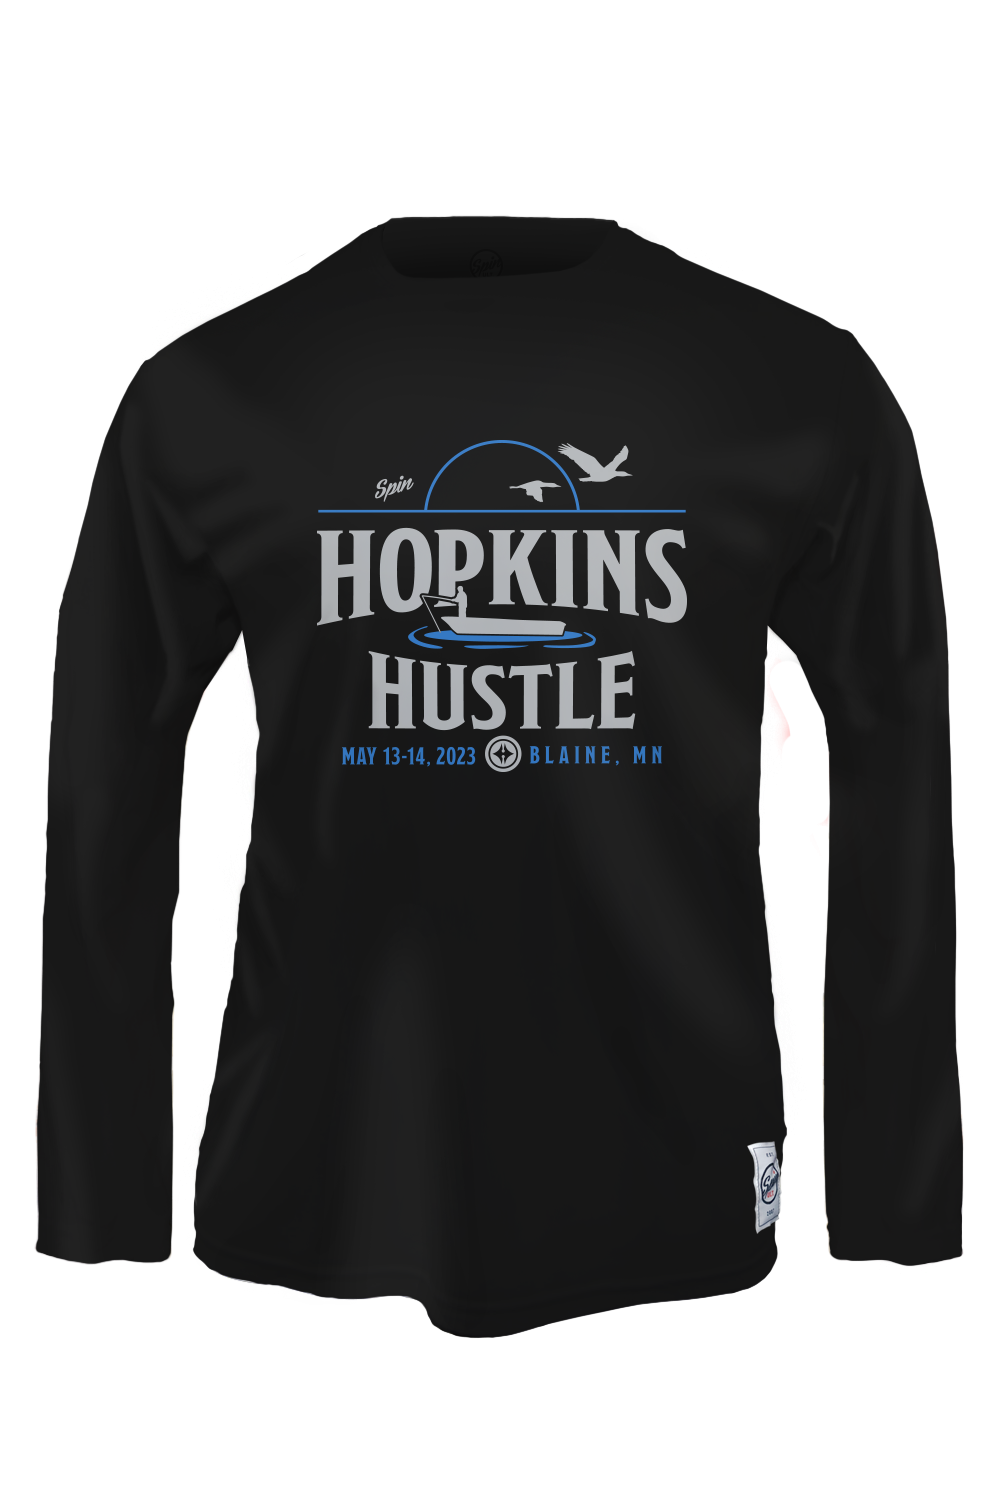 Hopkins Hustle 2023 Boating Long Sleeve